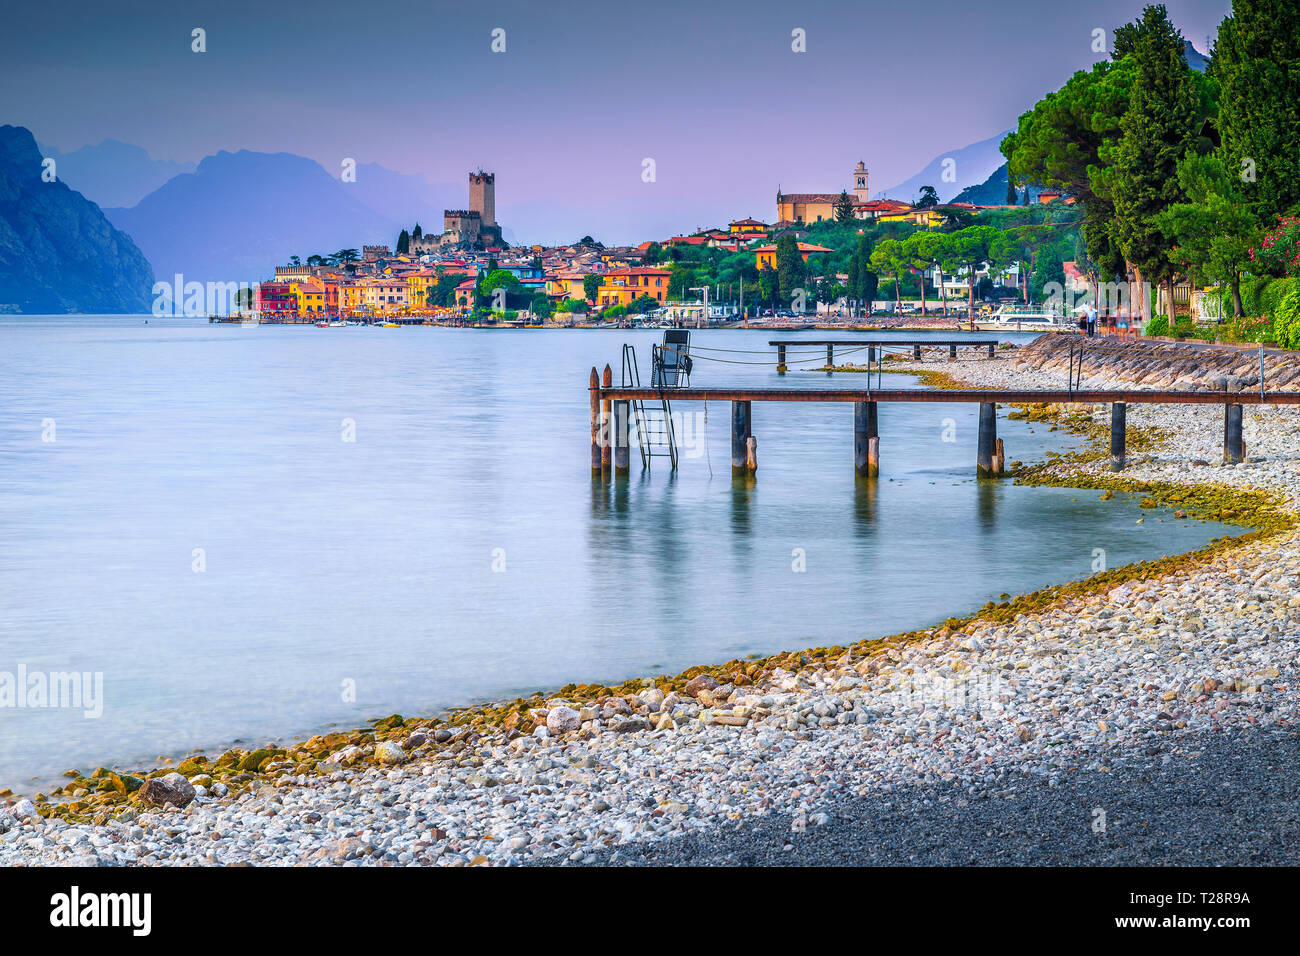 Maravilloso resort de vacaciones de verano y la relajación, Malcesine lugar turístico, impresionante playa de gravilla al atardecer, Lago de Garda, la región del Veneto, Italia, EUR Foto de stock